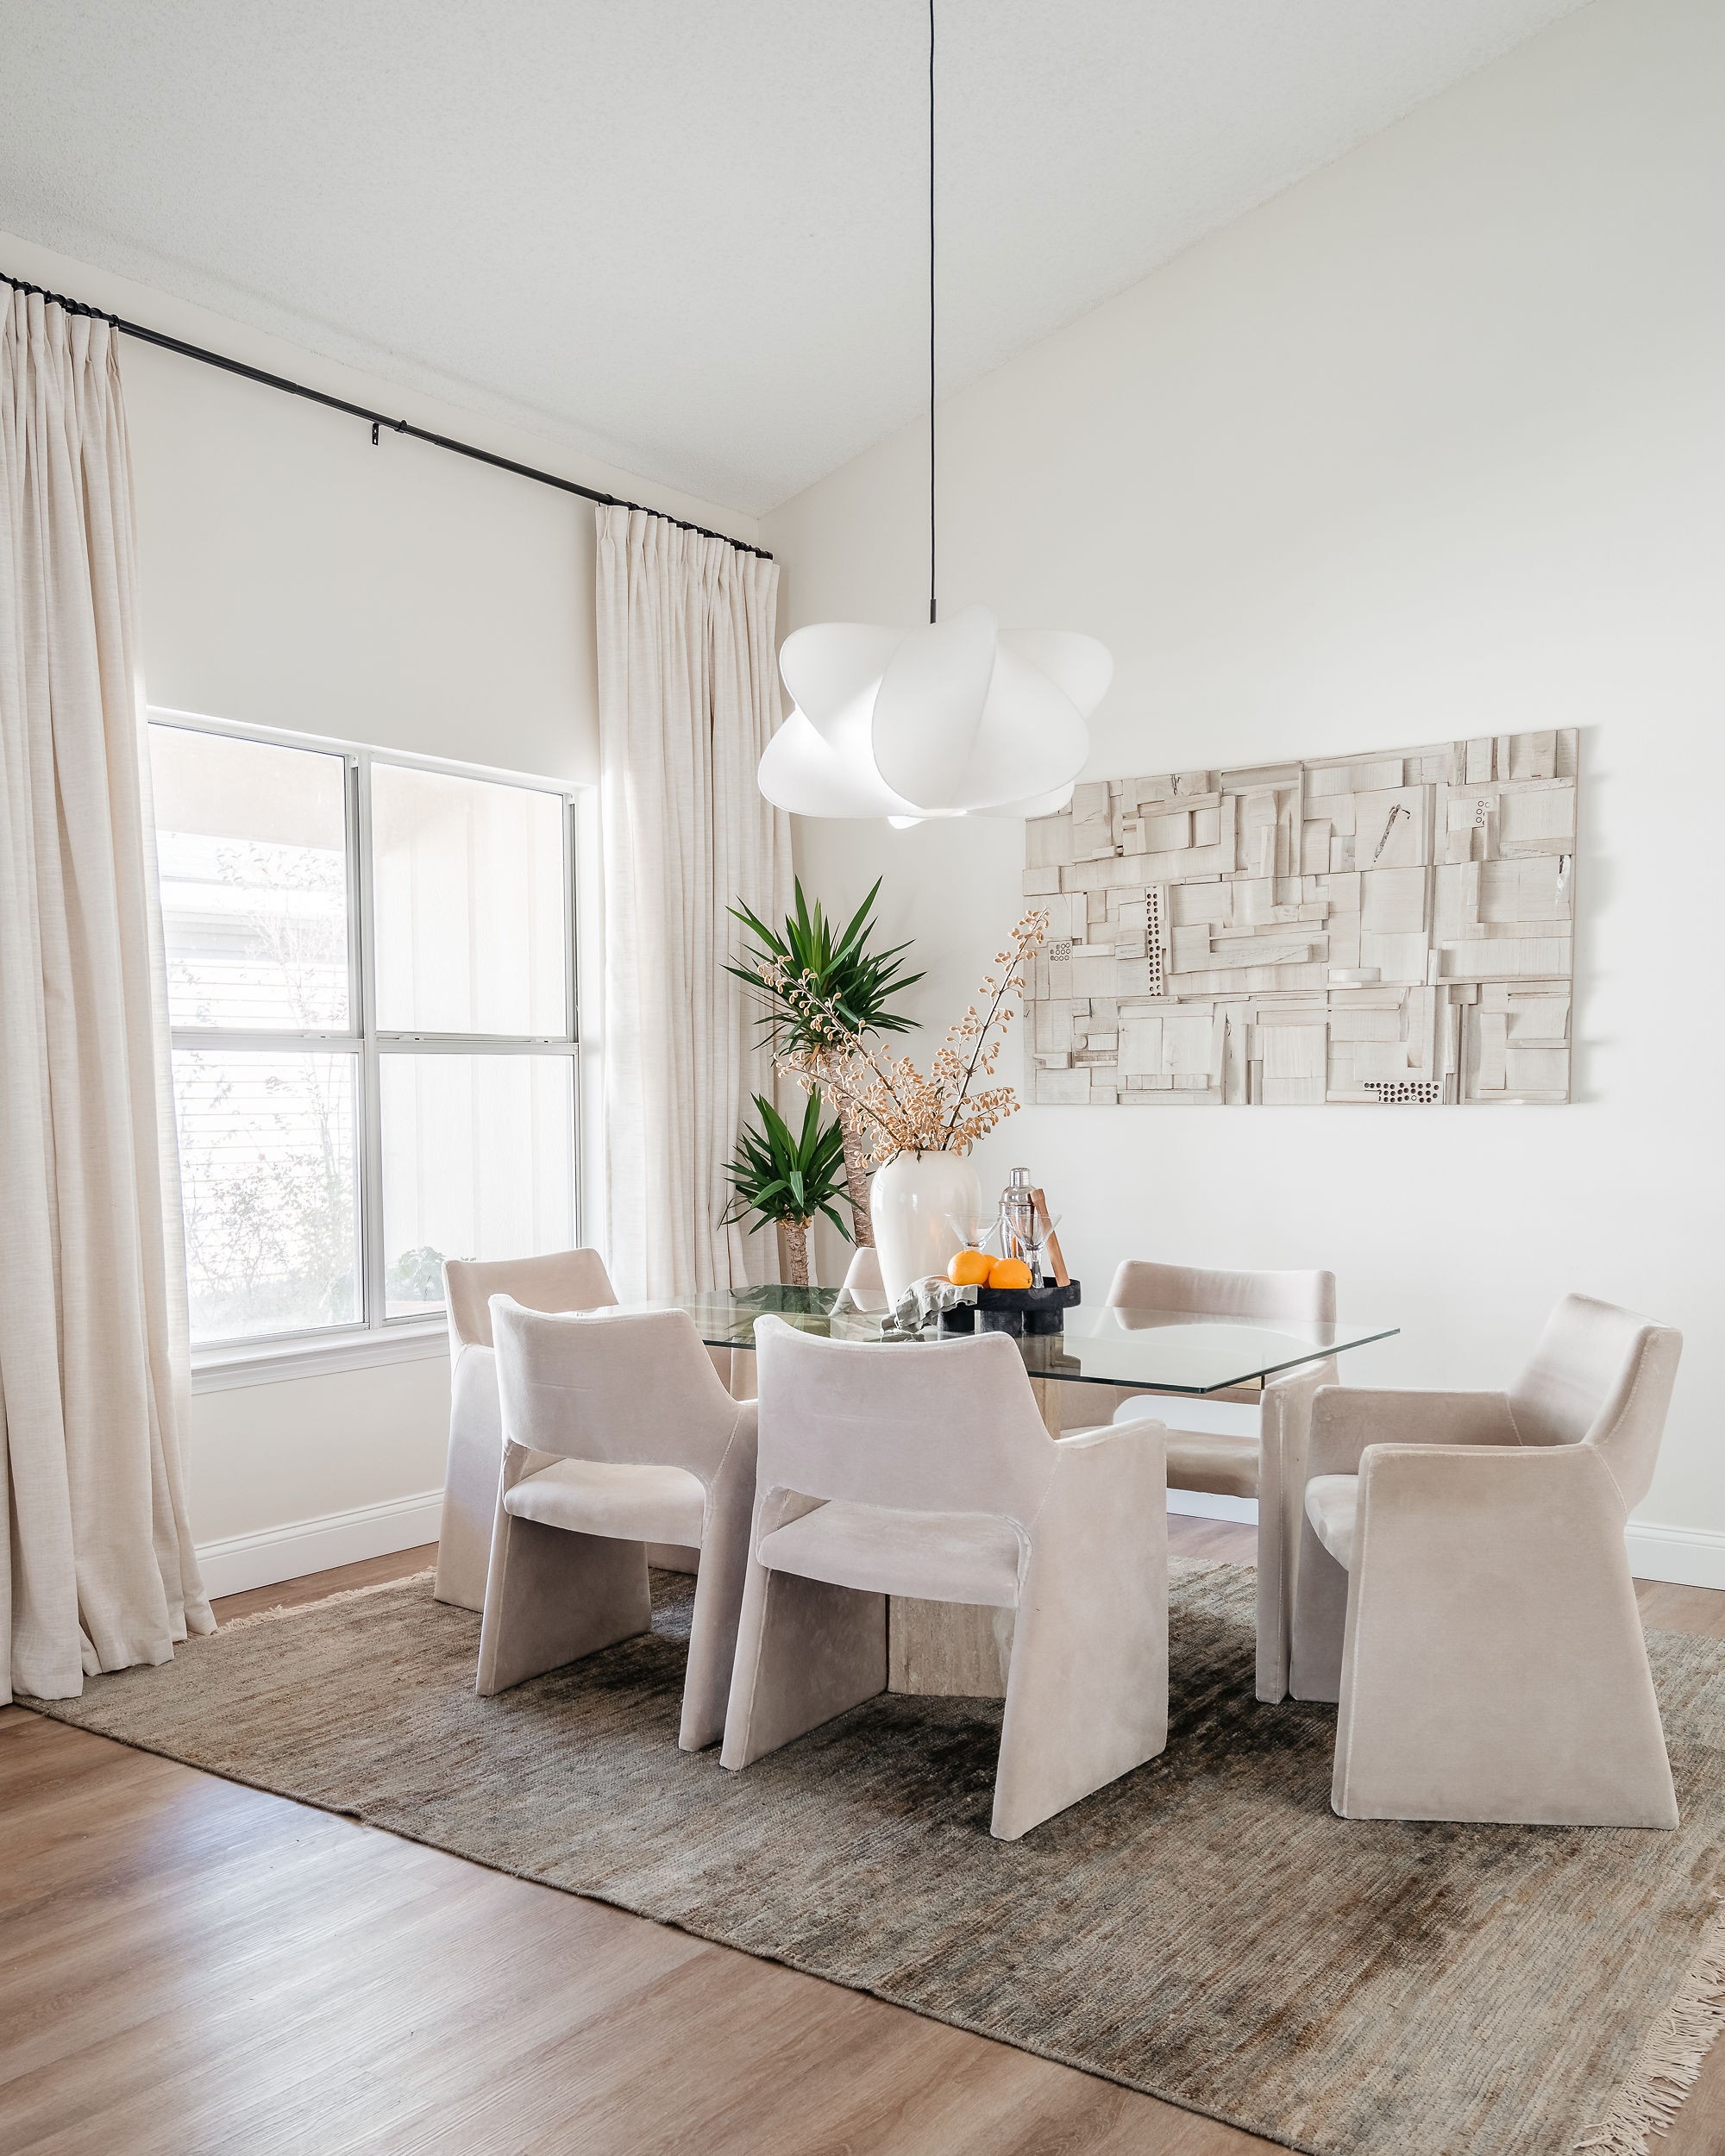 Décor do dia: sala de jantar com paleta neutra, plantas e cortinas de linho (Foto: Lauren Newman)